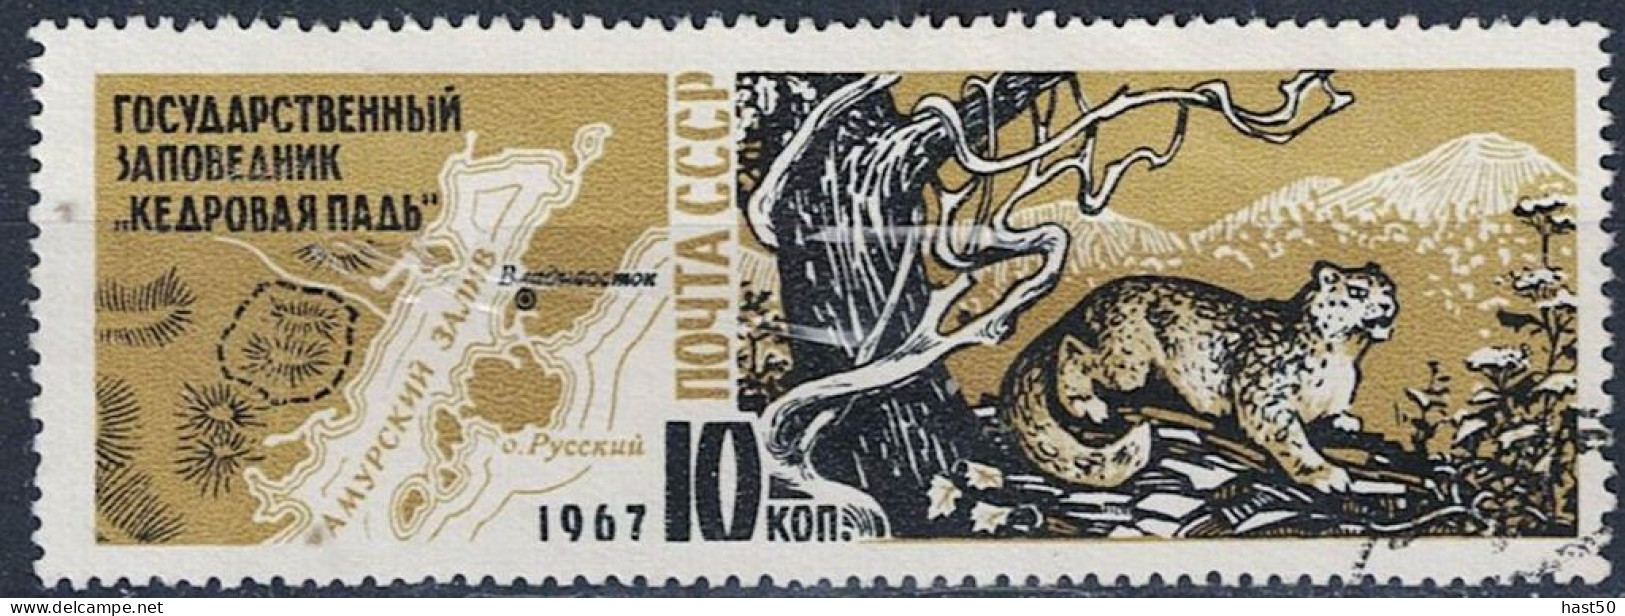 Sowjetunion UdSSR - Schneeleopard (Panthera Uncia) Vor Gebirgslandschaft (MiNr. 3400) 1967 - Gest Used Obl - Usados